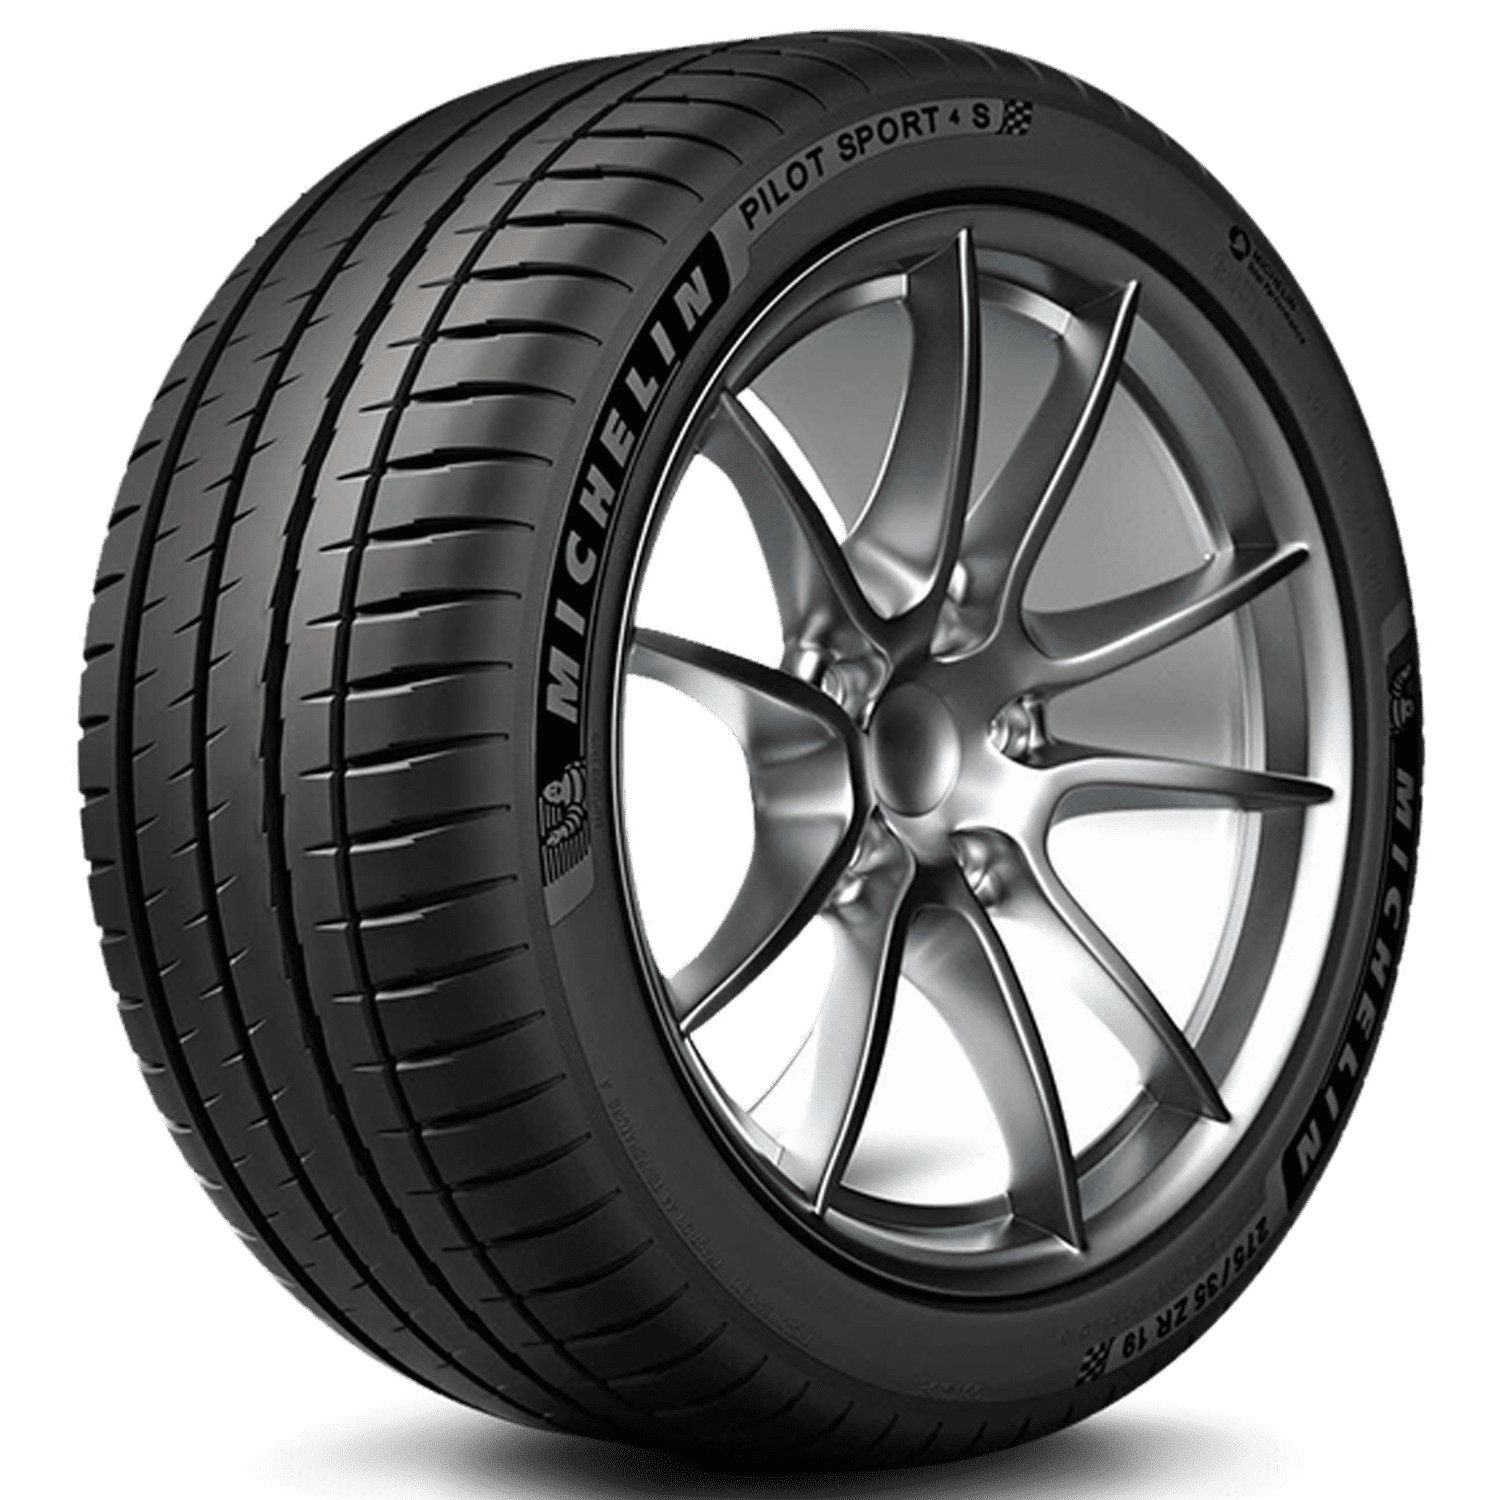 Michelin Pilot Sport 4 S 225/45-17 94 Y Tire